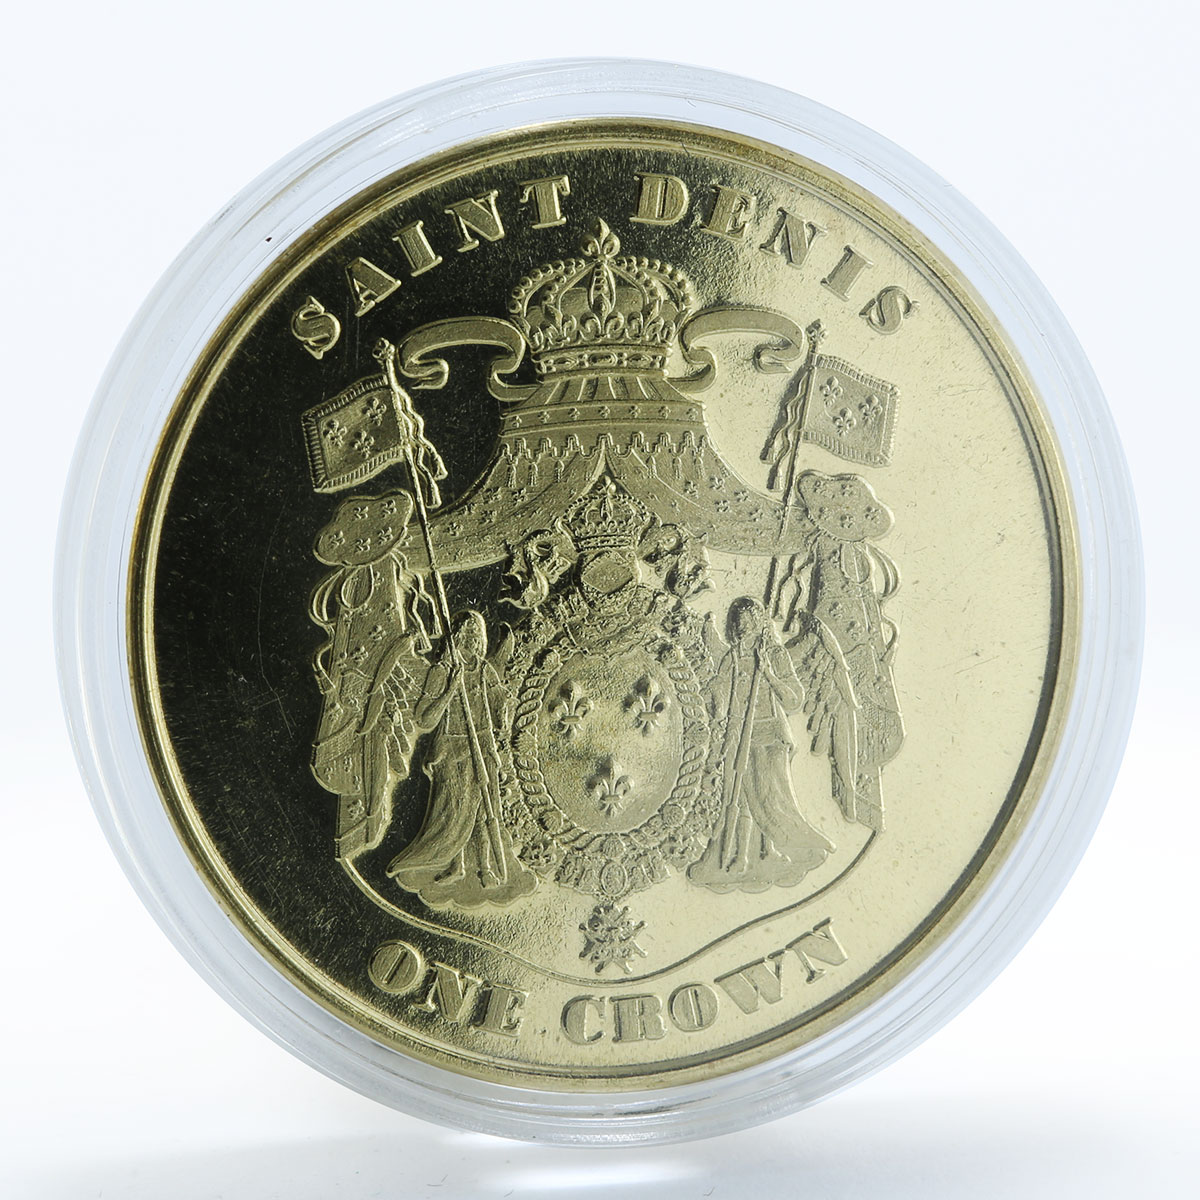 Saint Denis 1 crown Thoroughbred arabian horse coin 2018